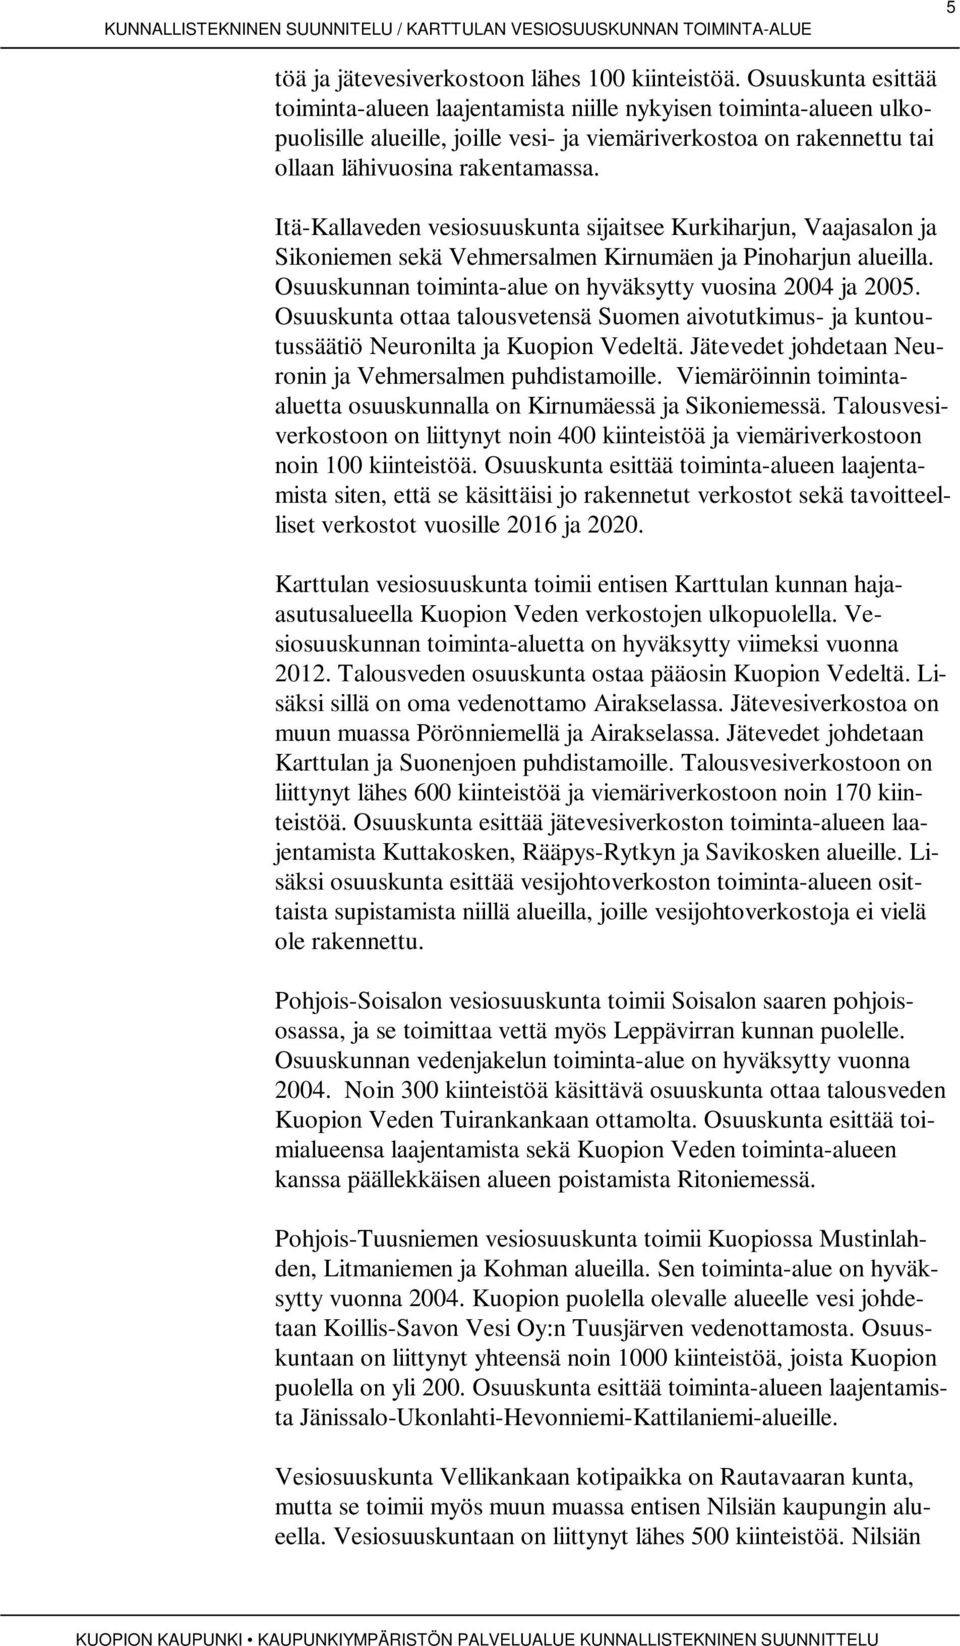 Itä-Kallaveden vesiosuuskunta sijaitsee Kurkiharjun, Vaajasalon ja Sikoniemen sekä Vehmersalmen Kirnumäen ja Pinoharjun alueilla. Osuuskunnan toiminta-alue on hyväksytty vuosina 2004 ja 2005.